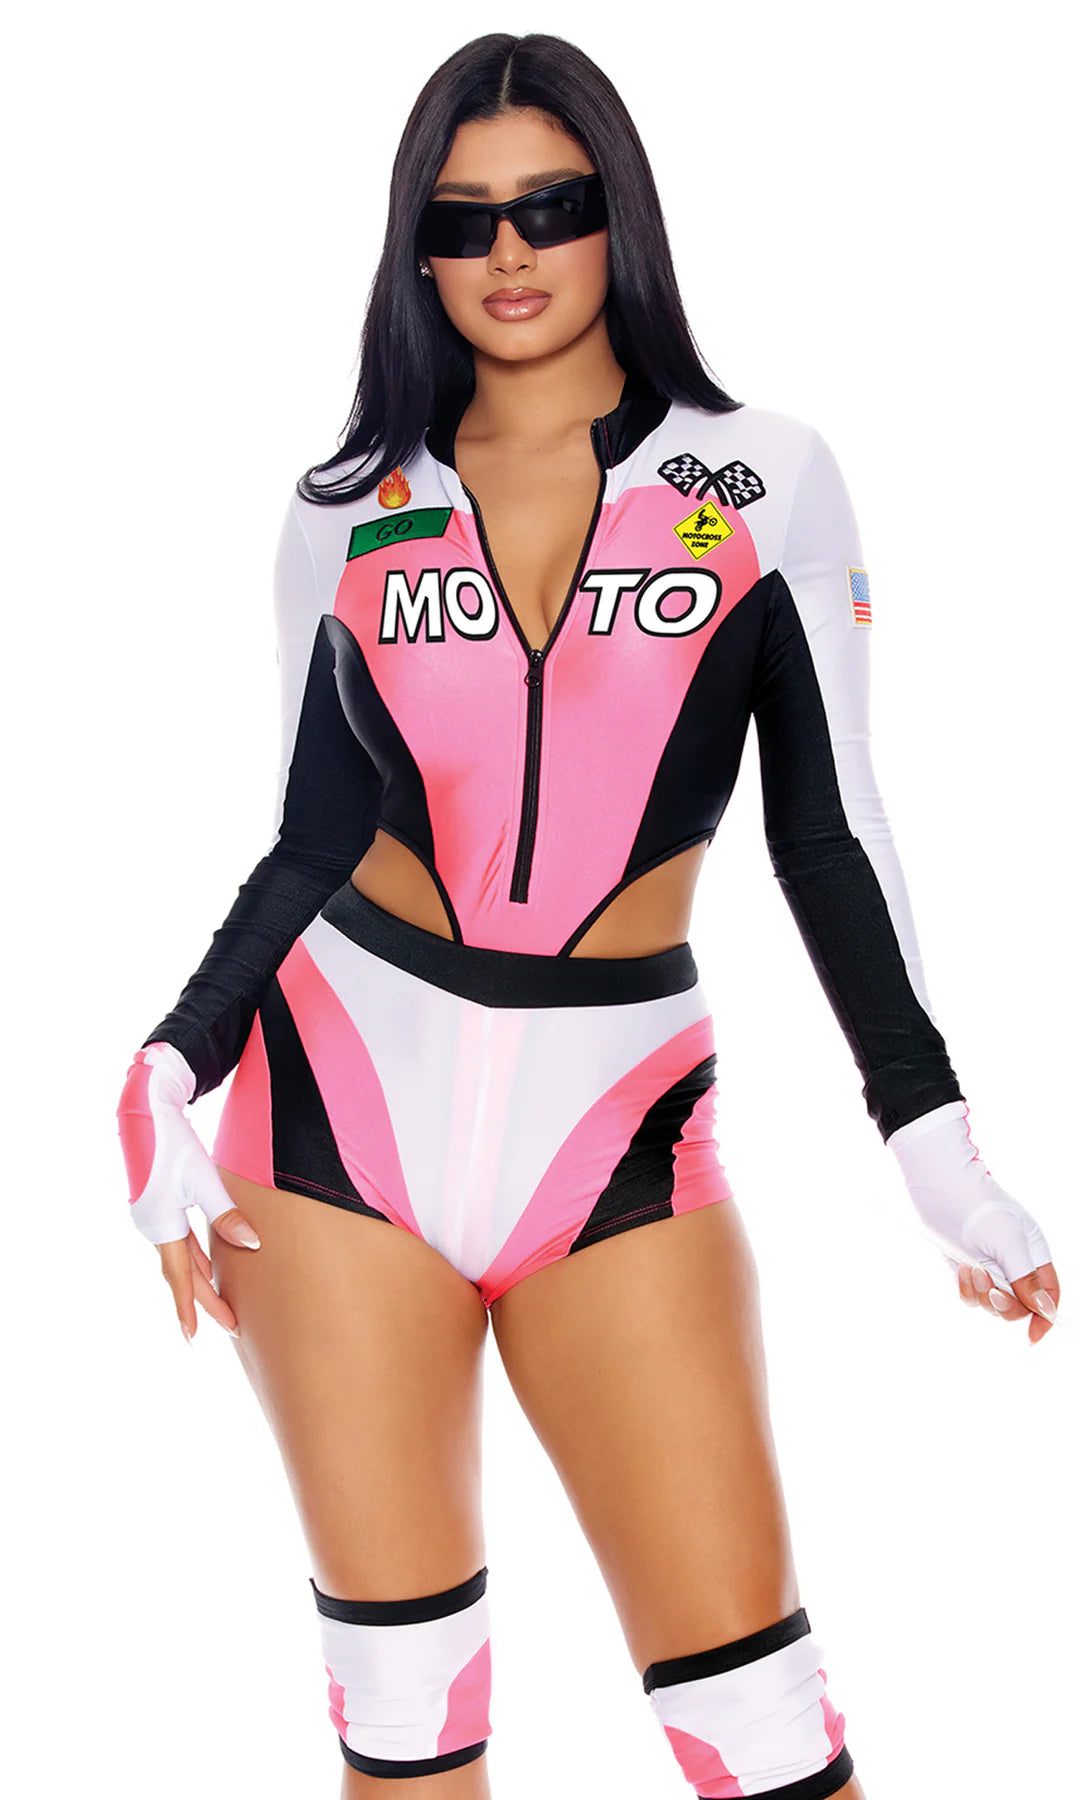 Moto Mami Racer Costume